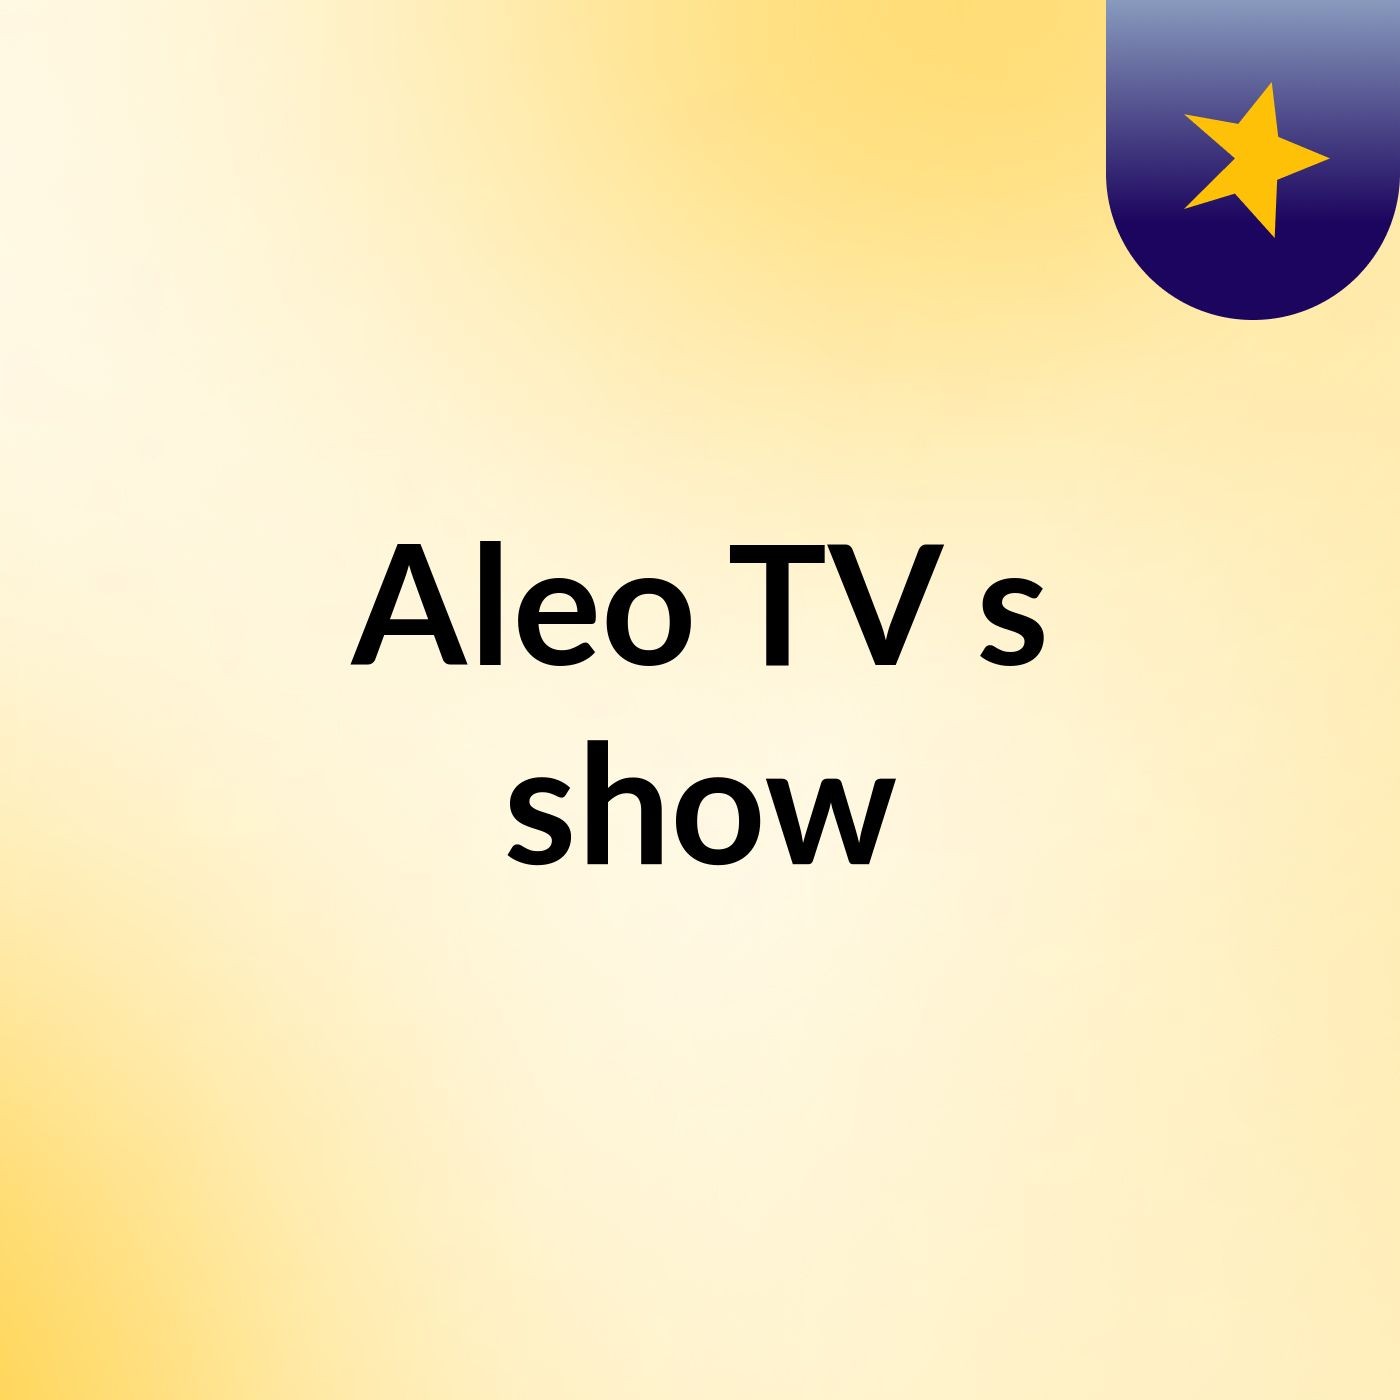 Aleo TV's show